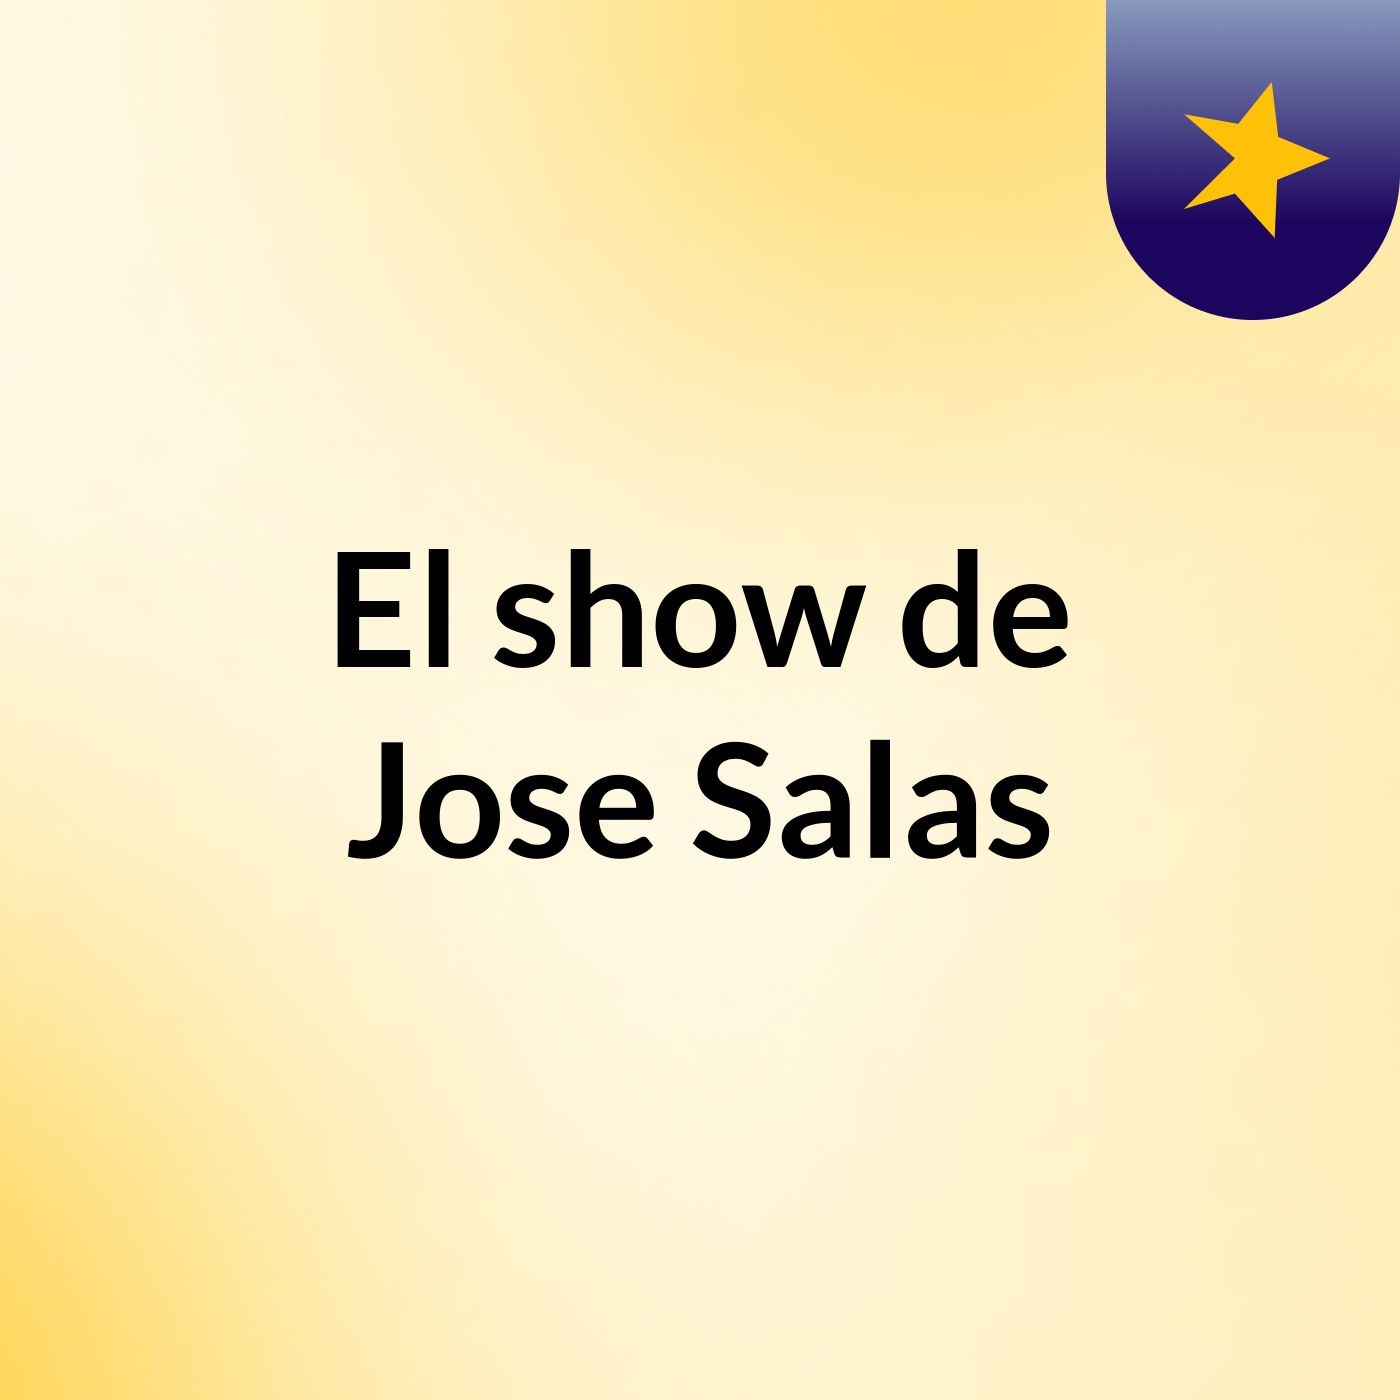 El show de Jose Salas